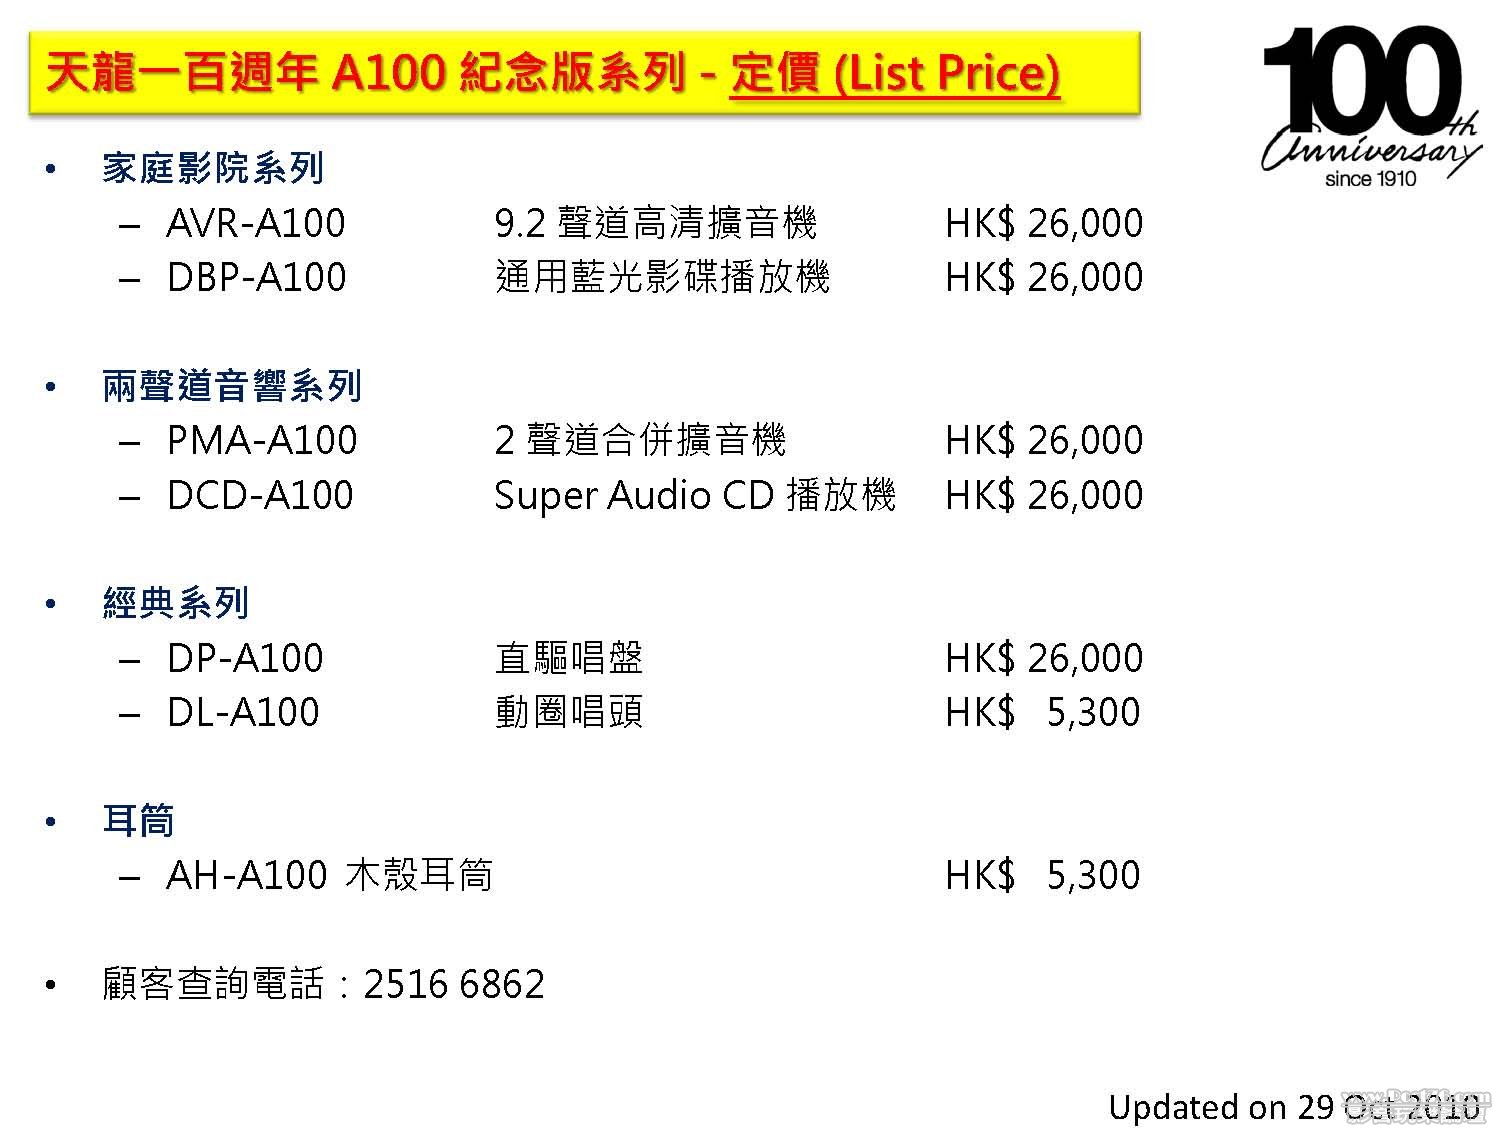 Press_A100 price List_20101029_01[1].jpg